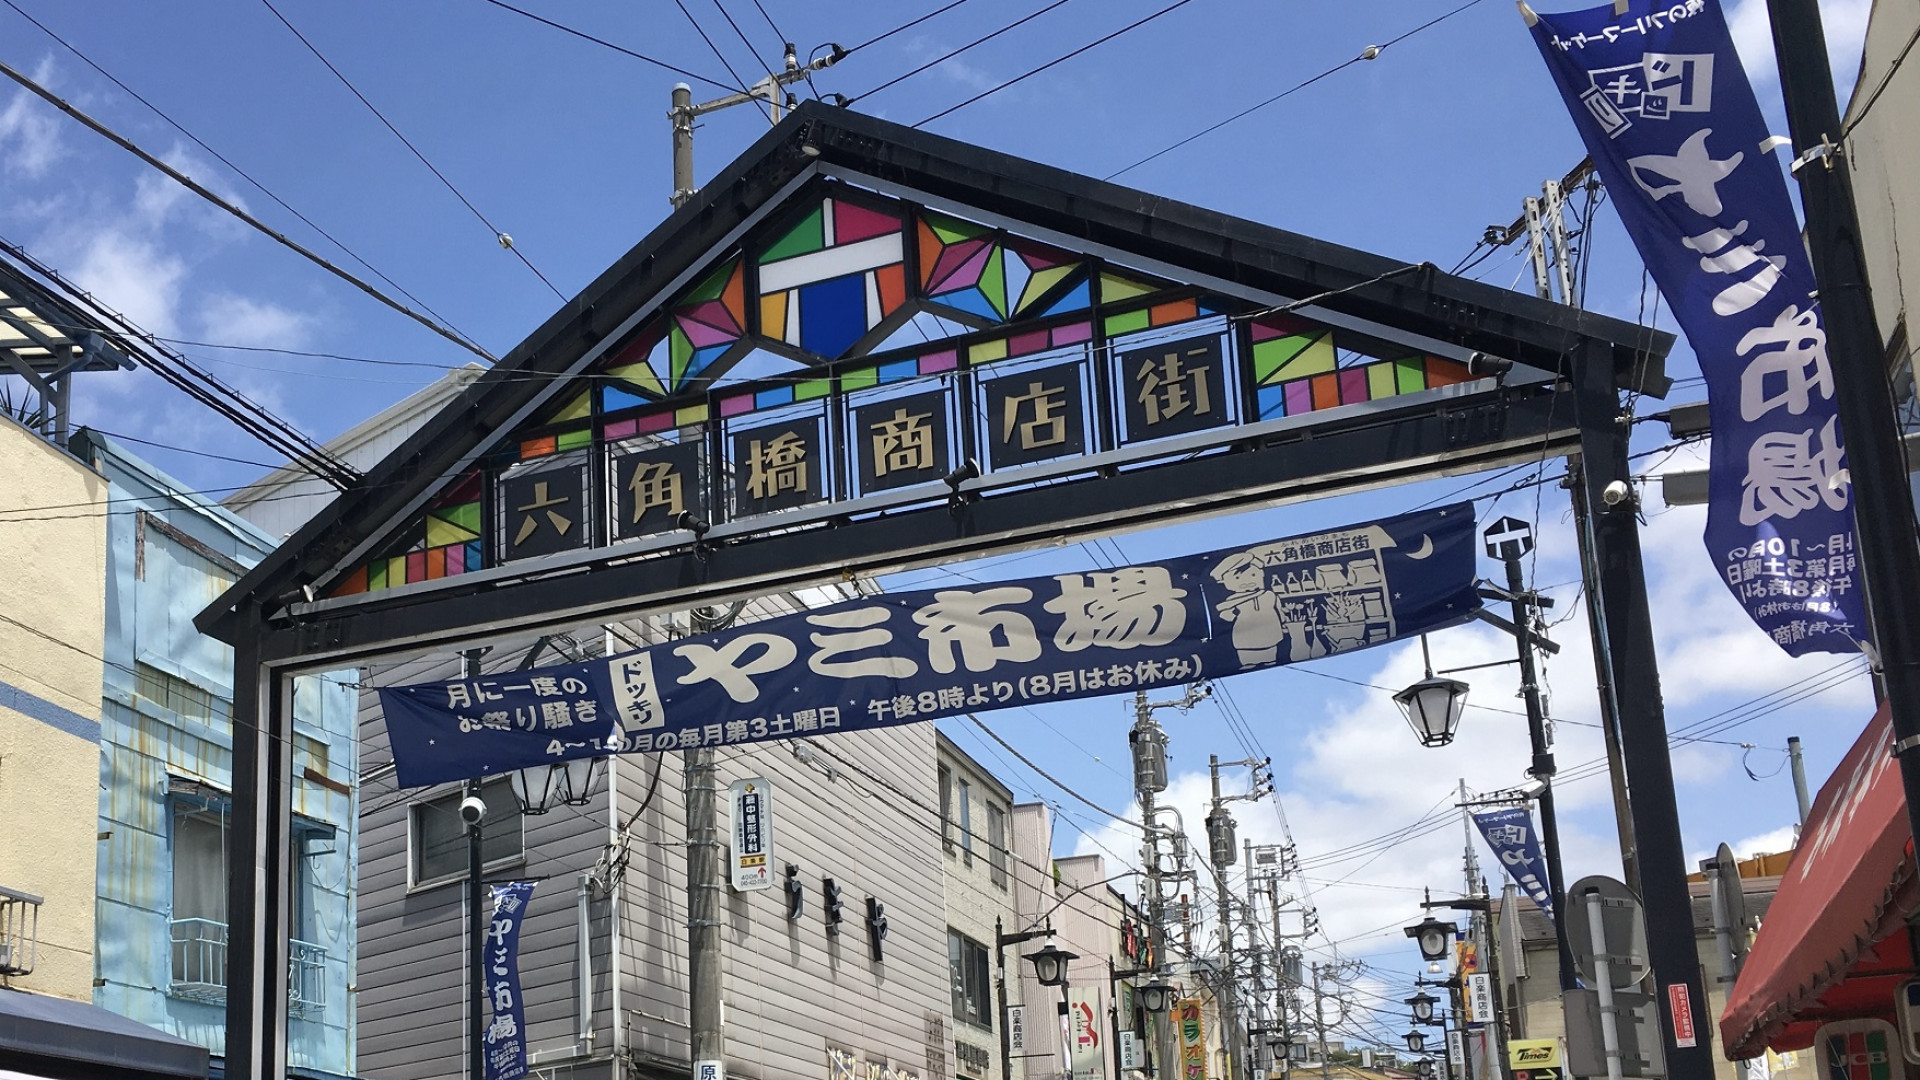 Shotengai (Khu mua sắm) Rokkakubashi 